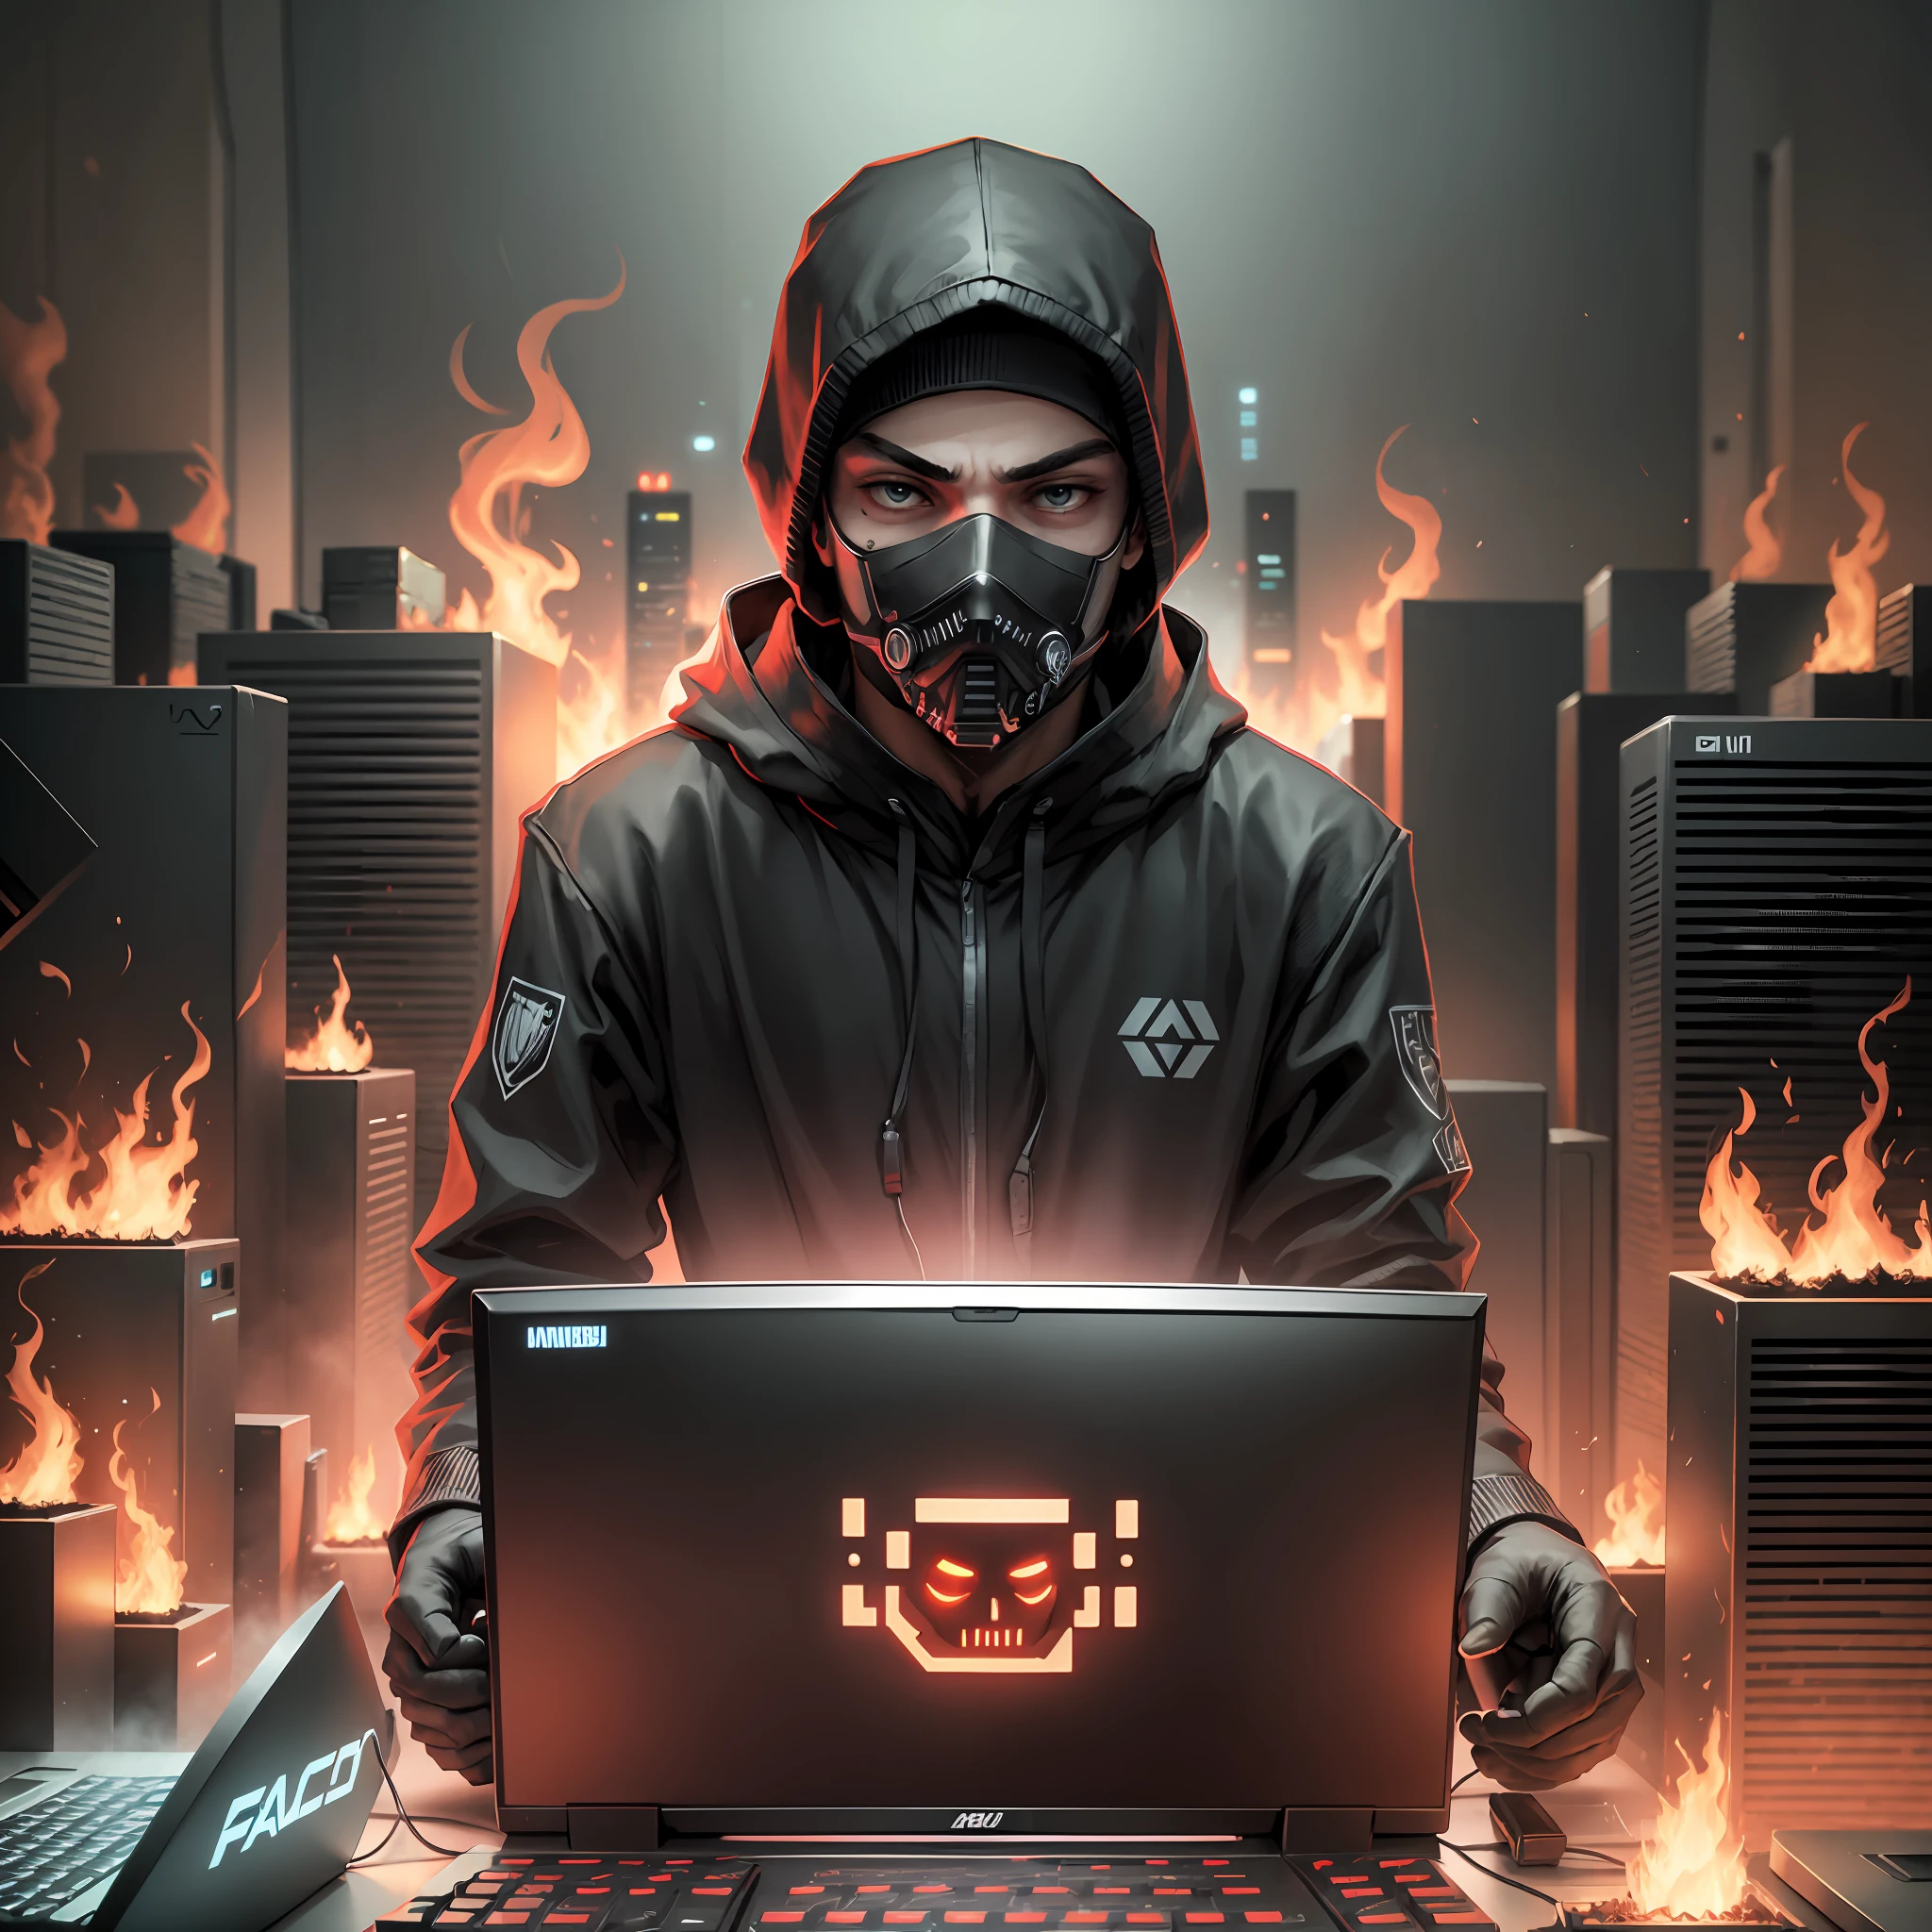 cara de hacker com máscara no rosto vestido de preto no frenesi do compudador e atrás dele um raio de fogo --auto --s2